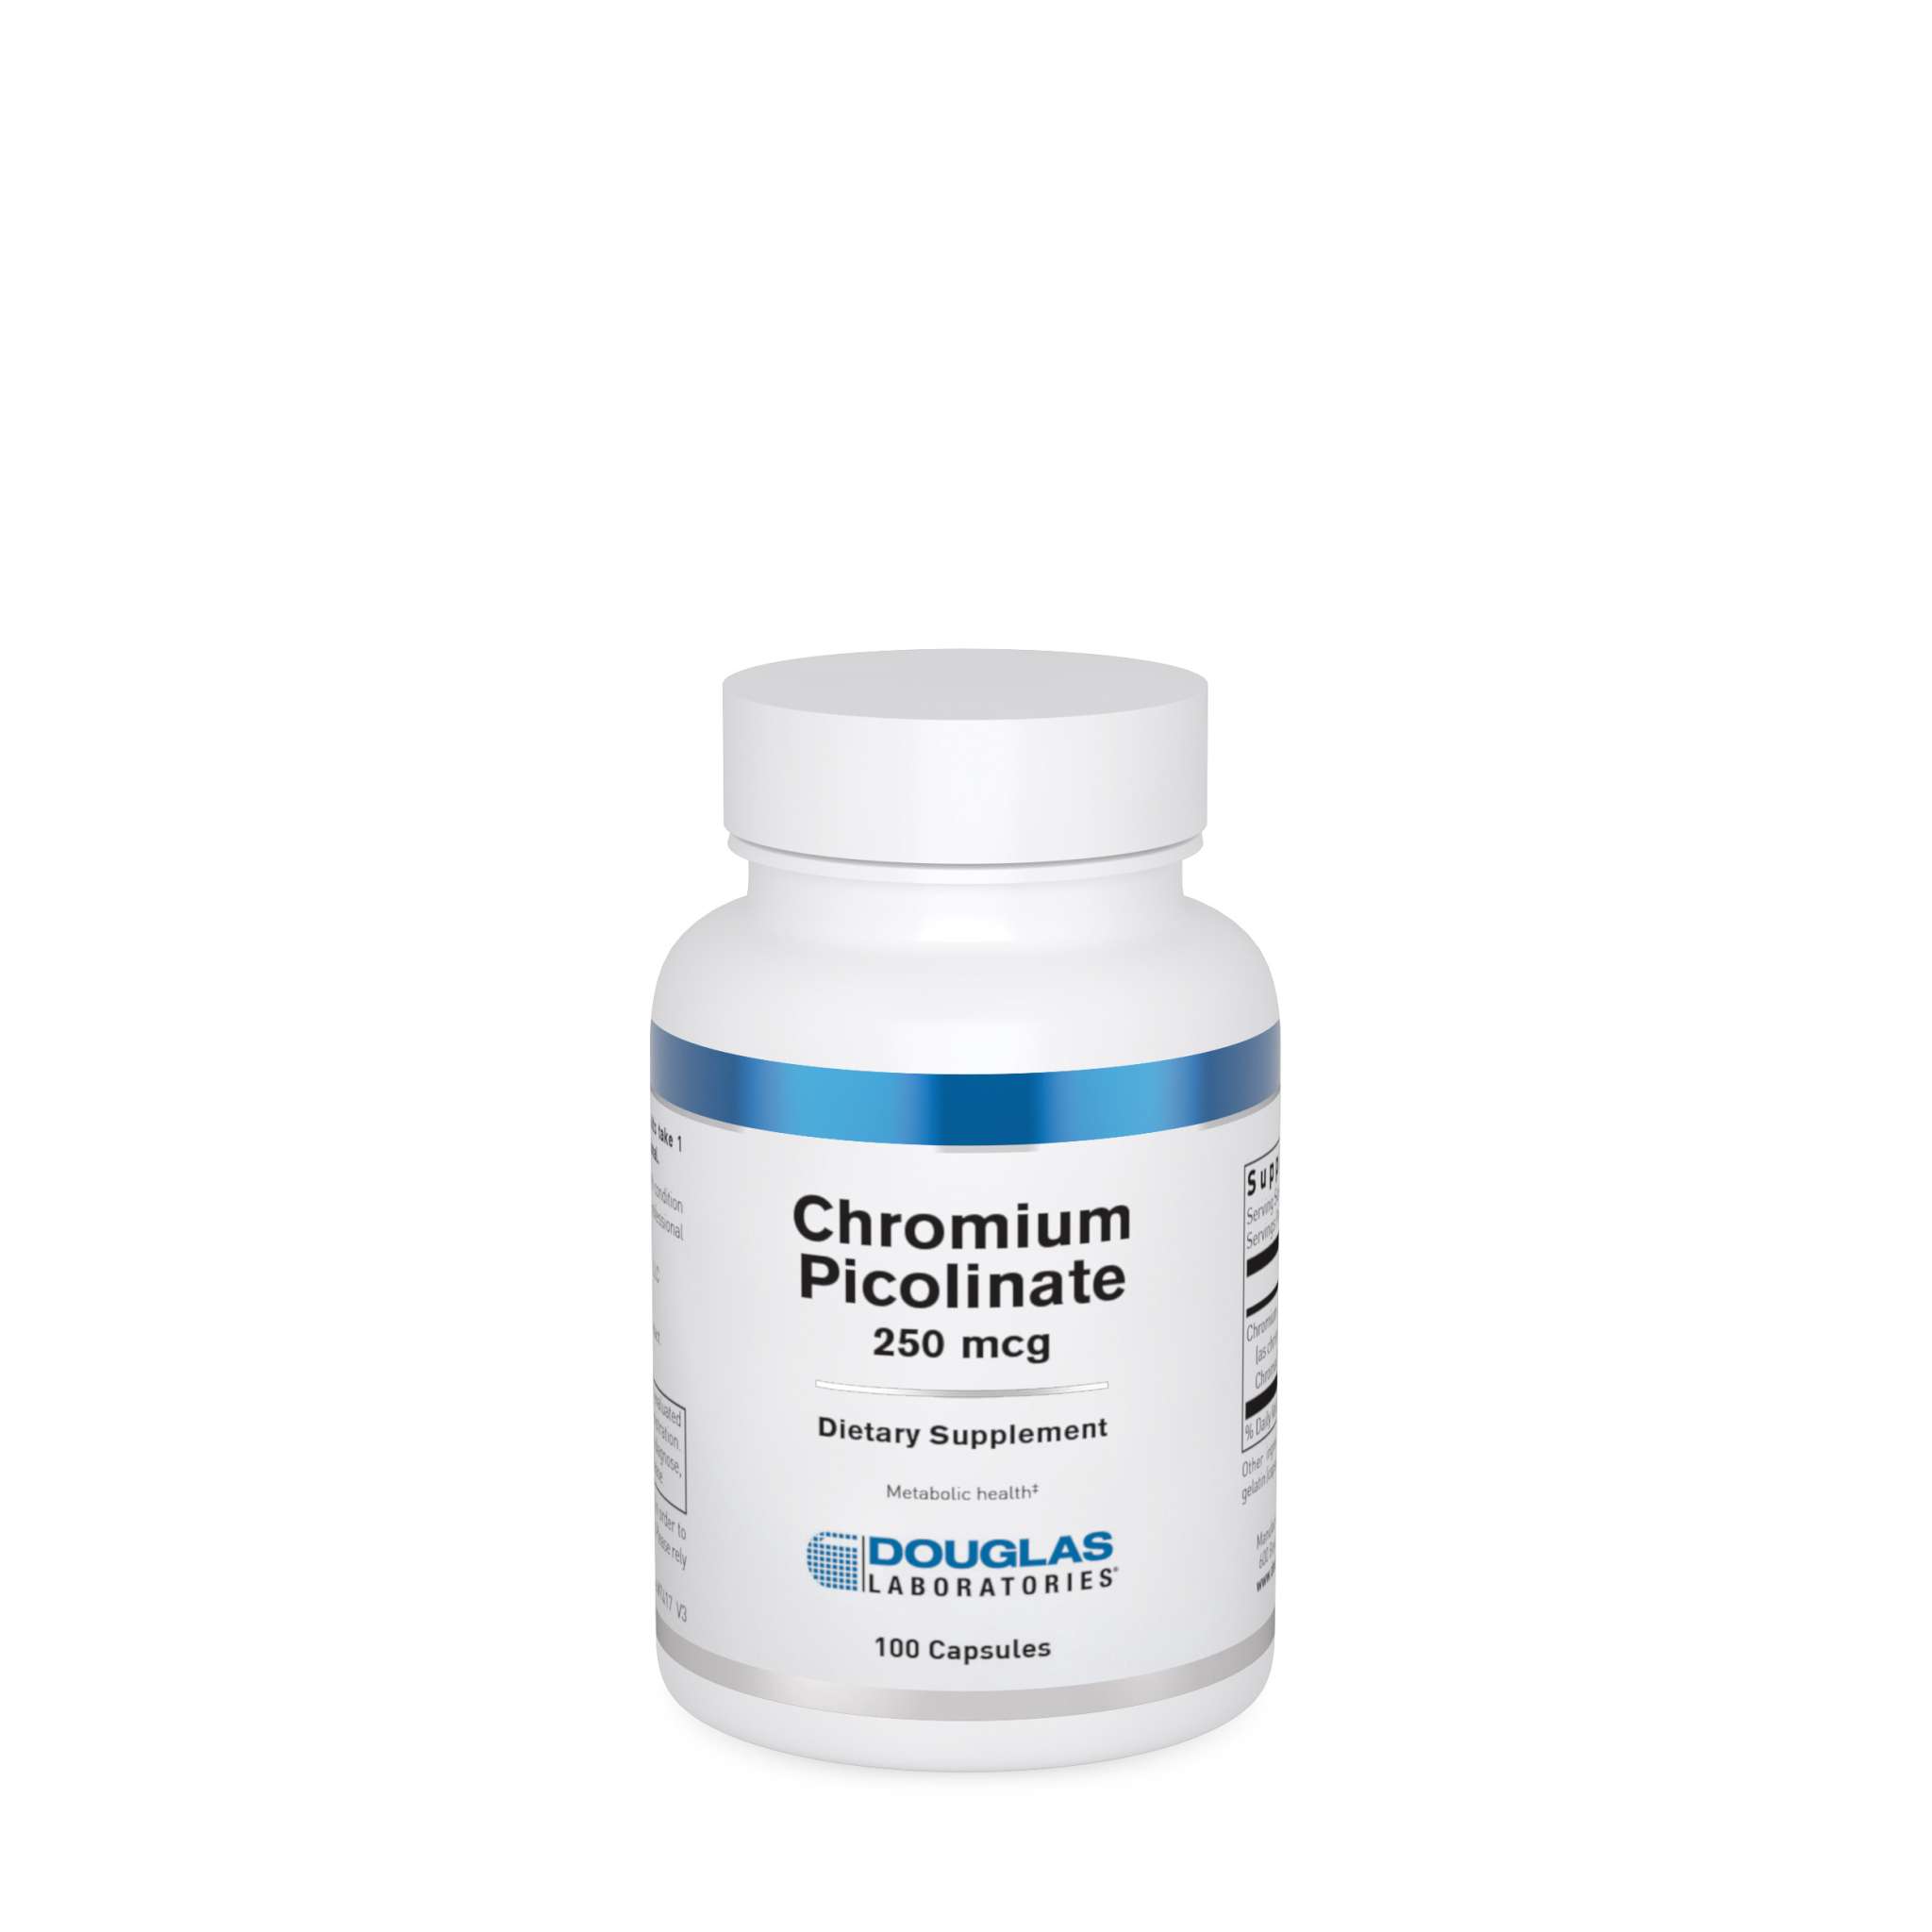 Douglas Laboratories - Chromium Picolinate 250 mcg